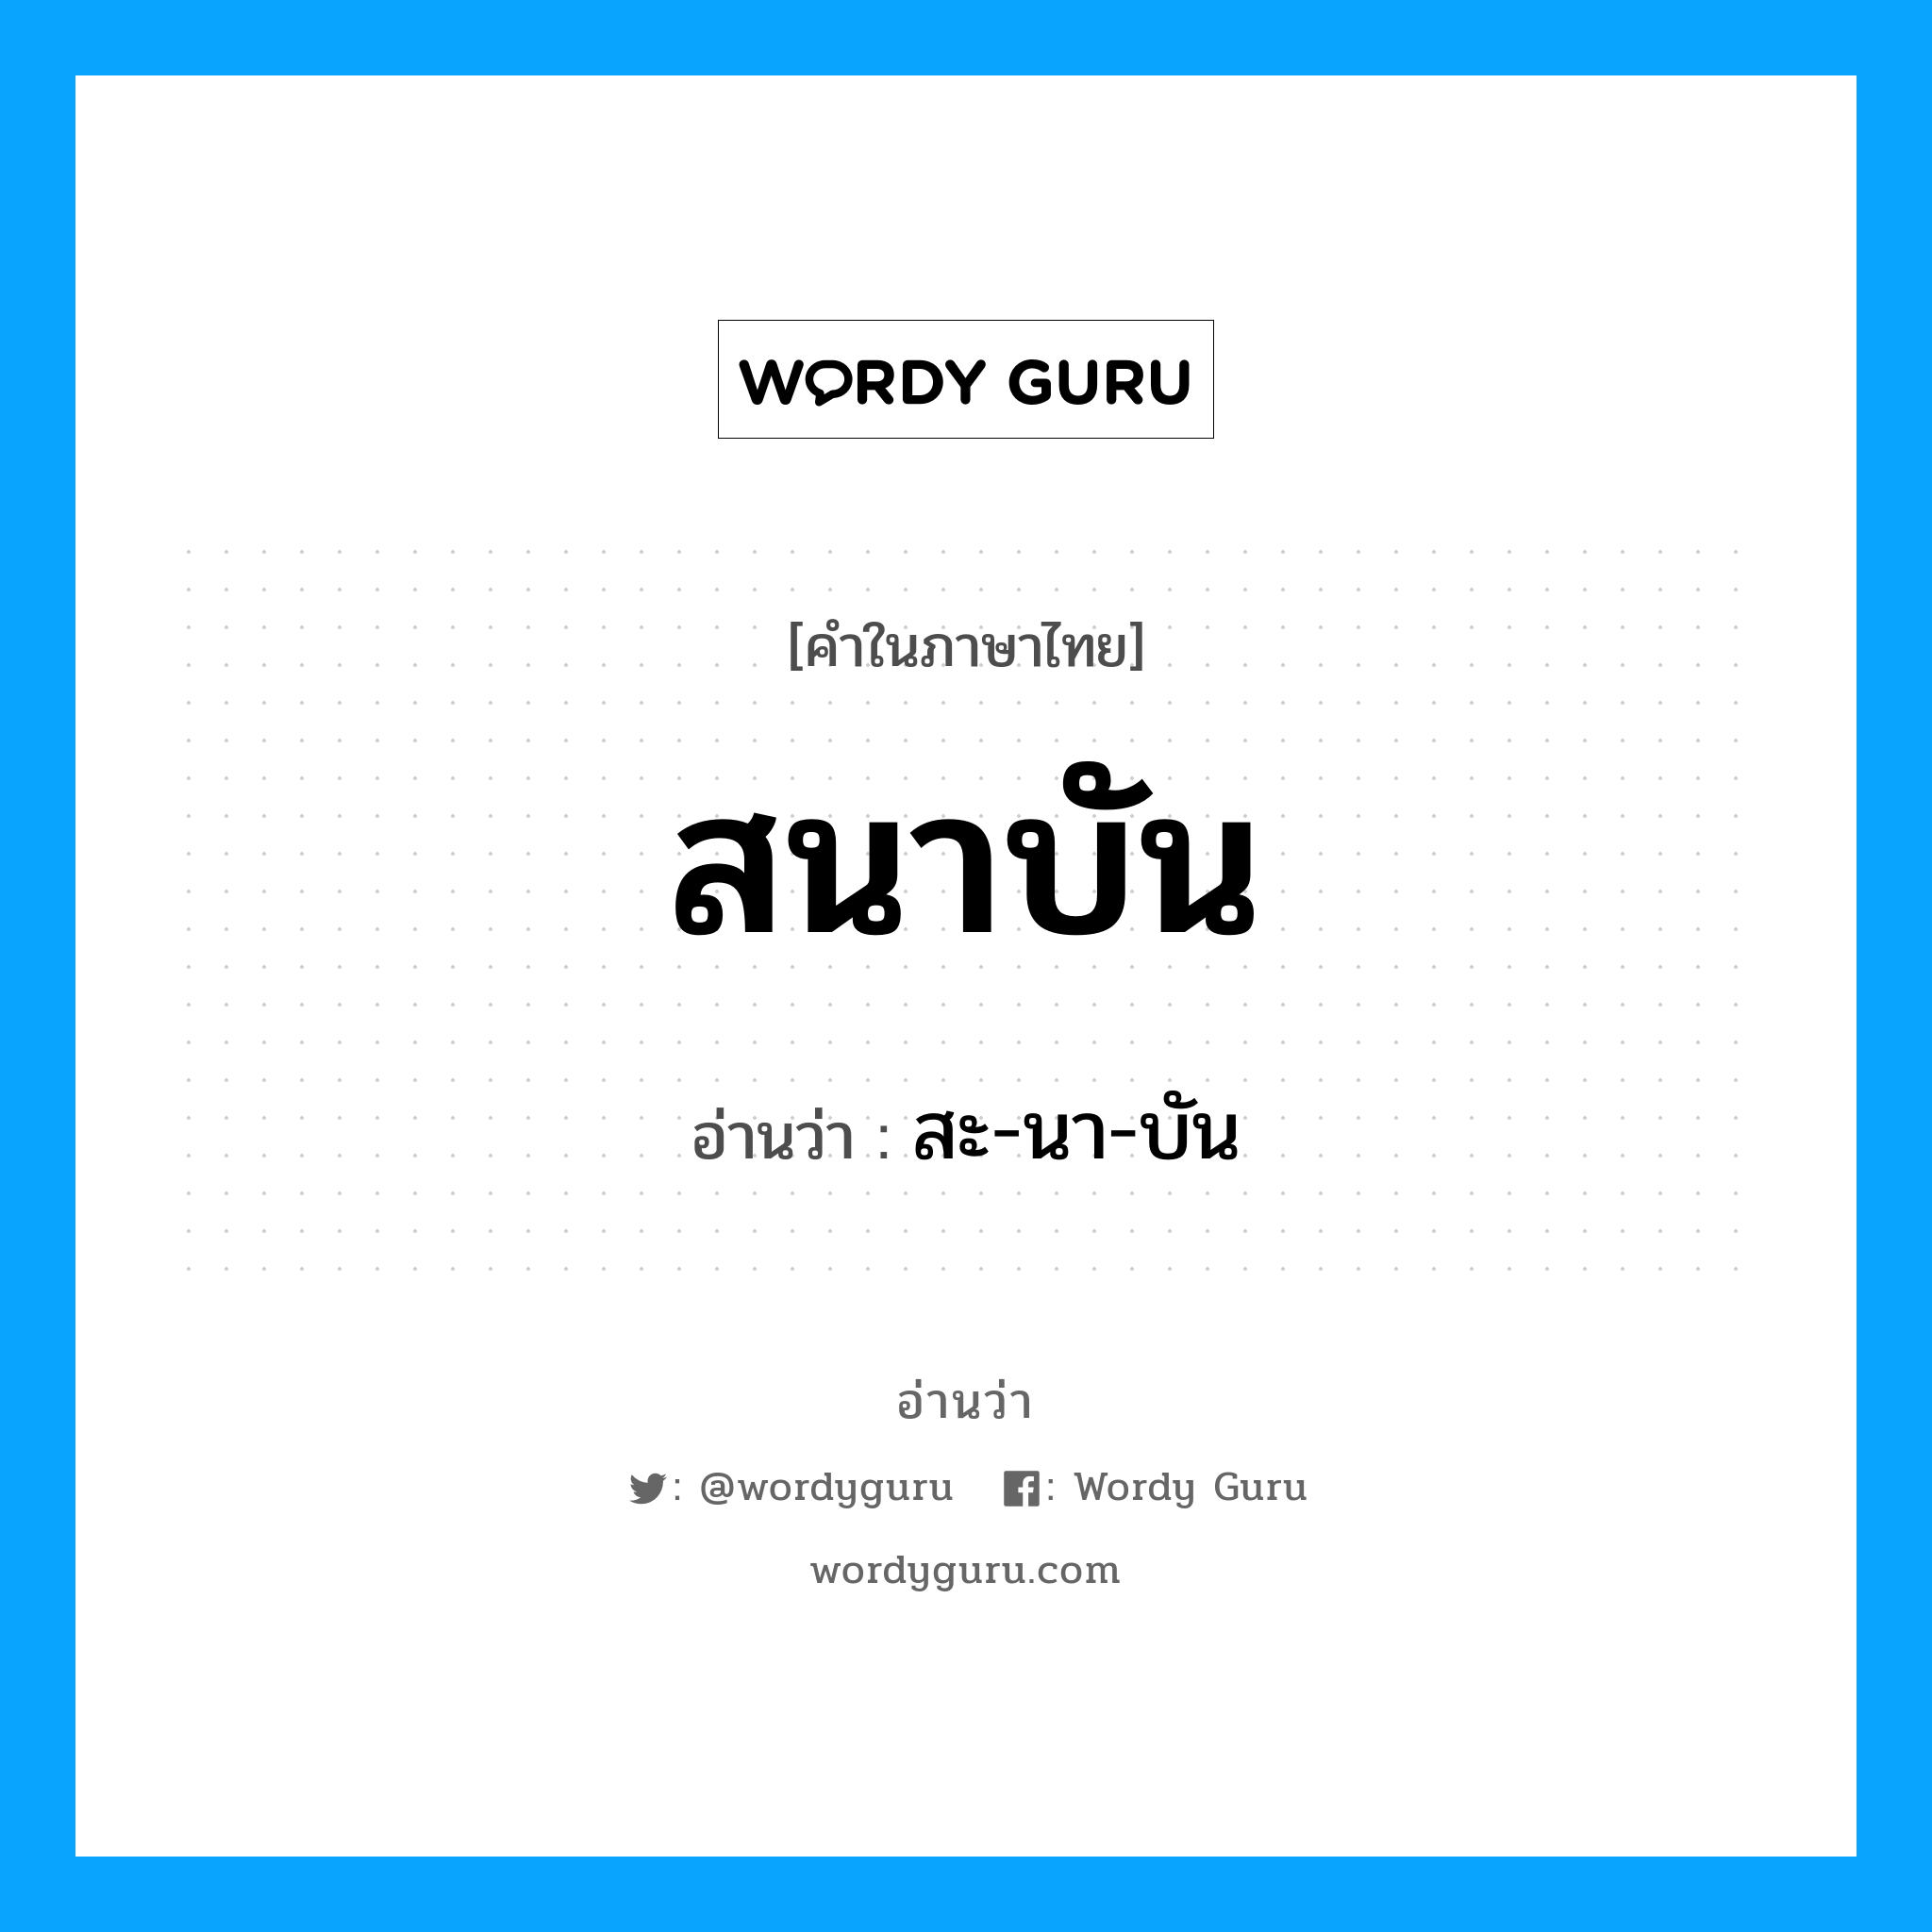 สะ-นา-บัน เป็นคำอ่านของคำไหน?, คำในภาษาไทย สะ-นา-บัน อ่านว่า สนาบัน